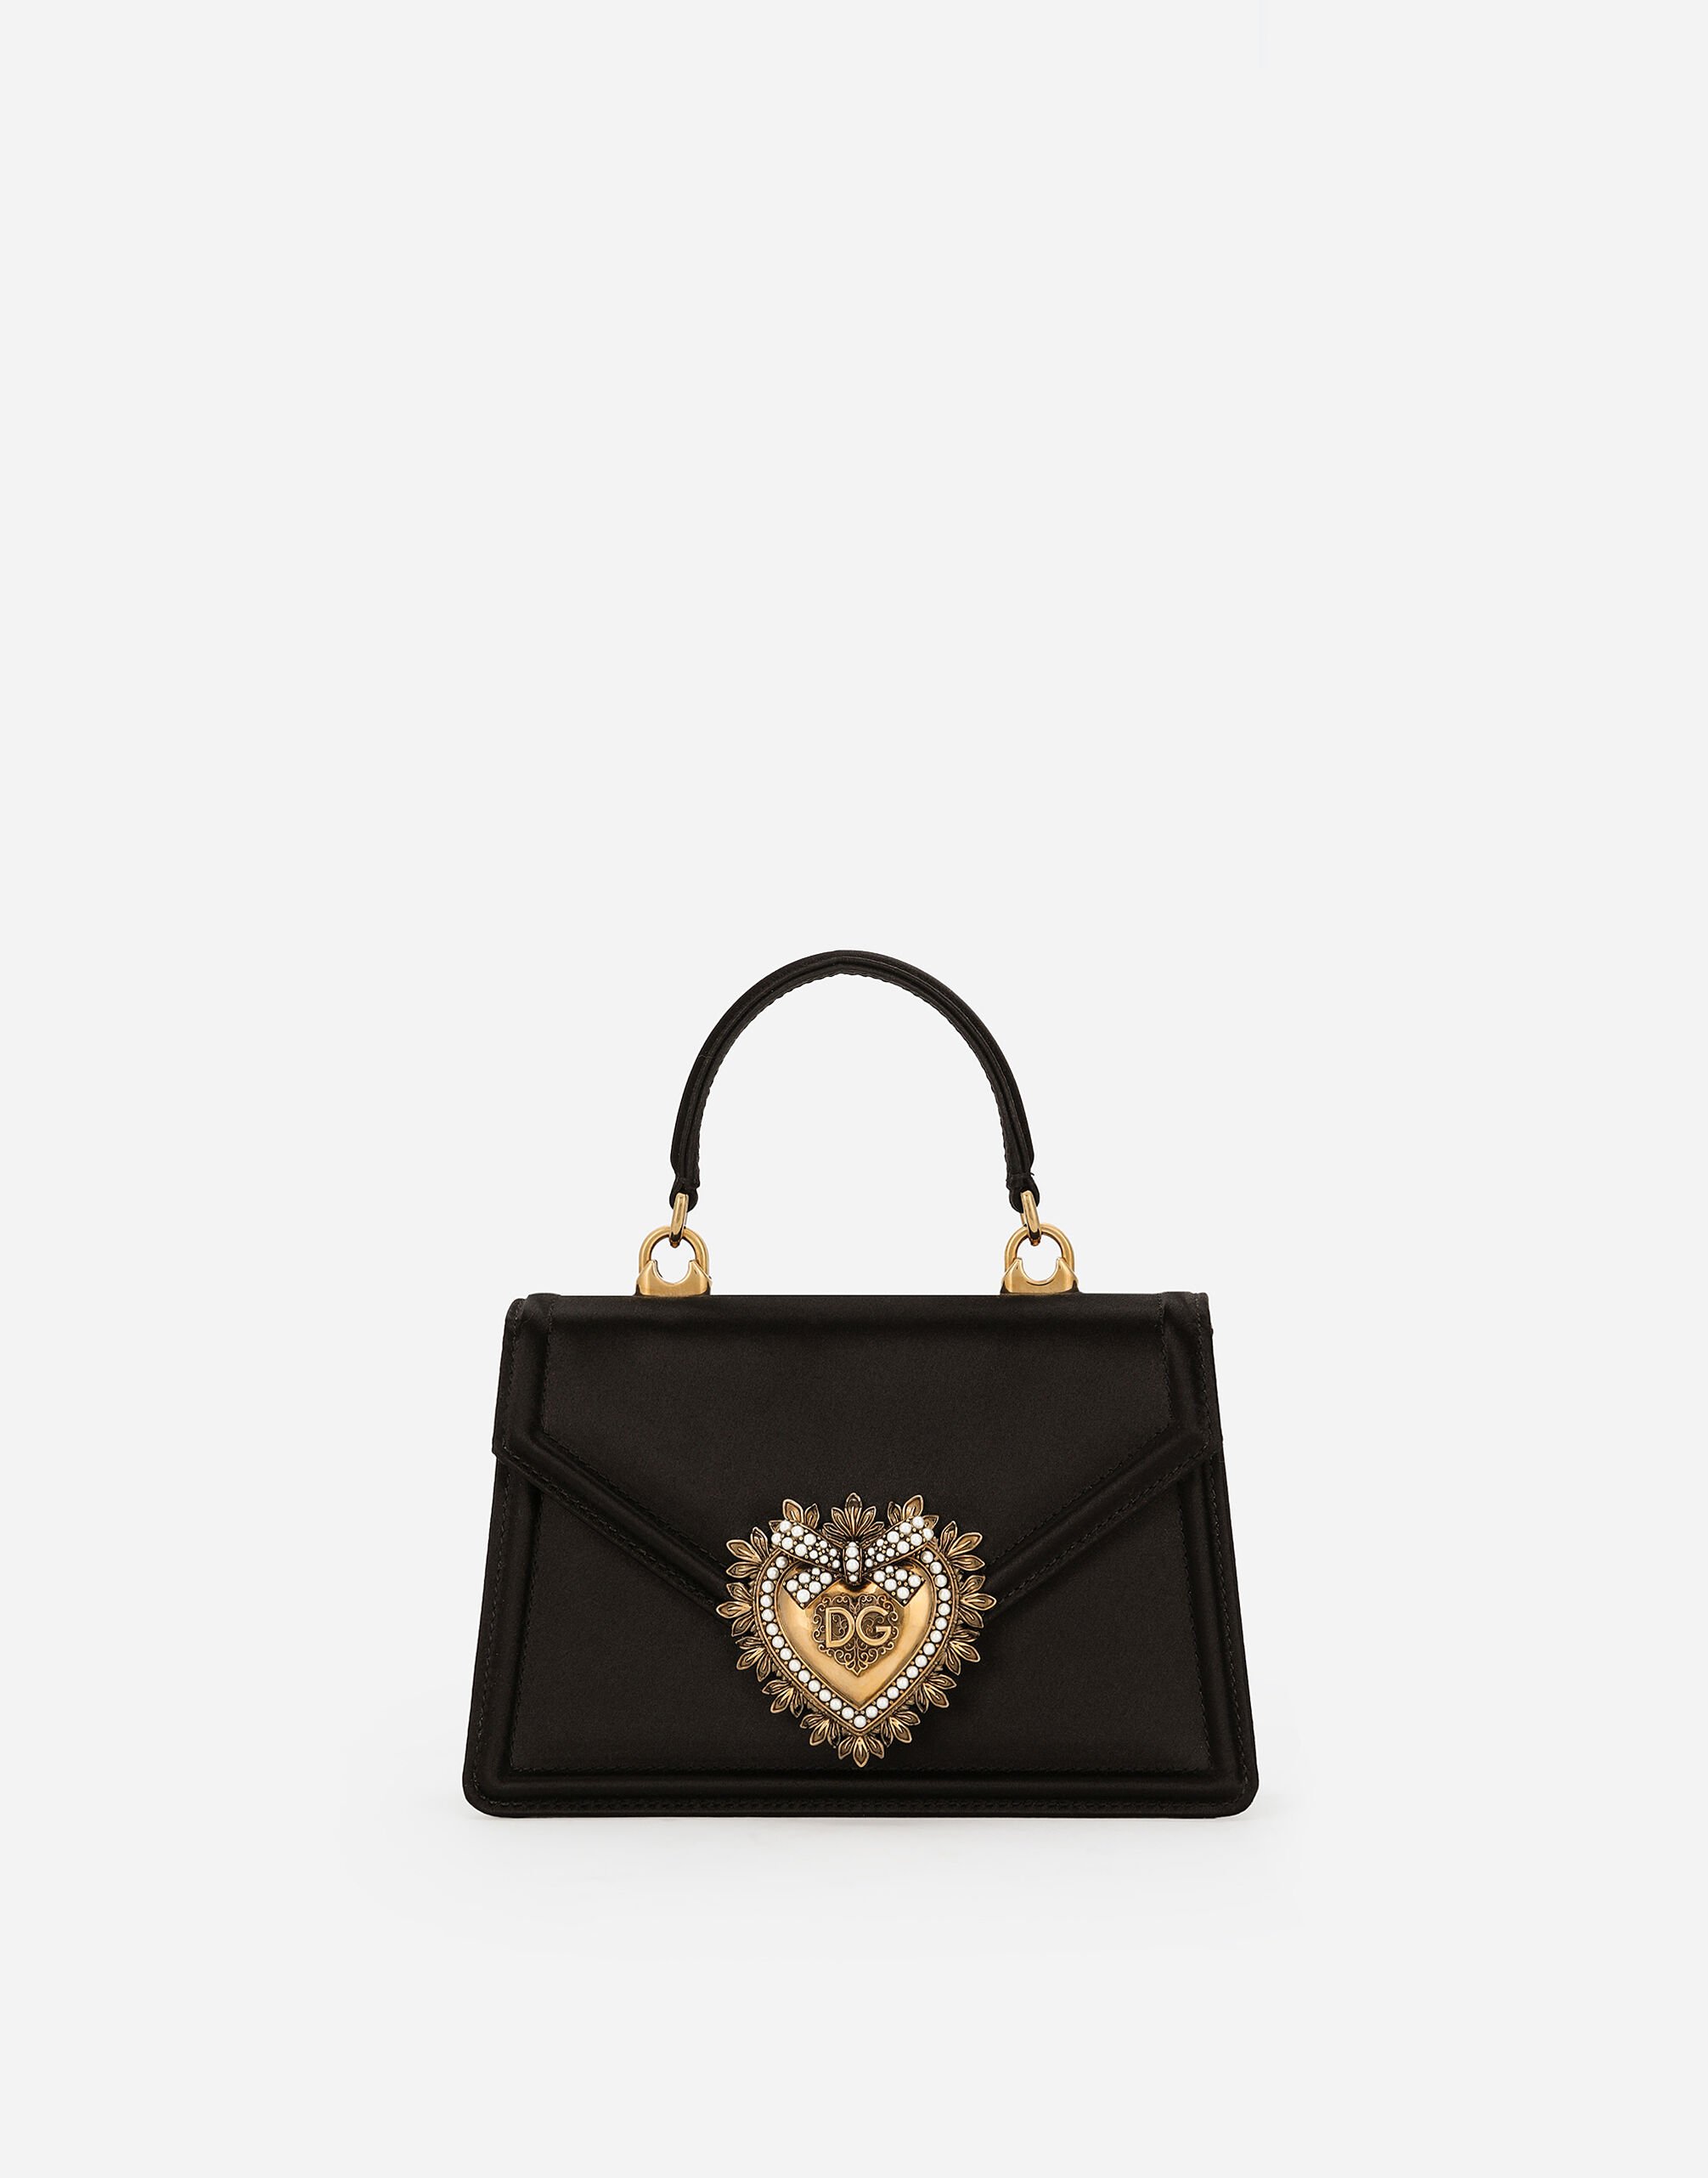 Dolce & Gabbana Small satin Devotion bag Multicolor BB7655A4547